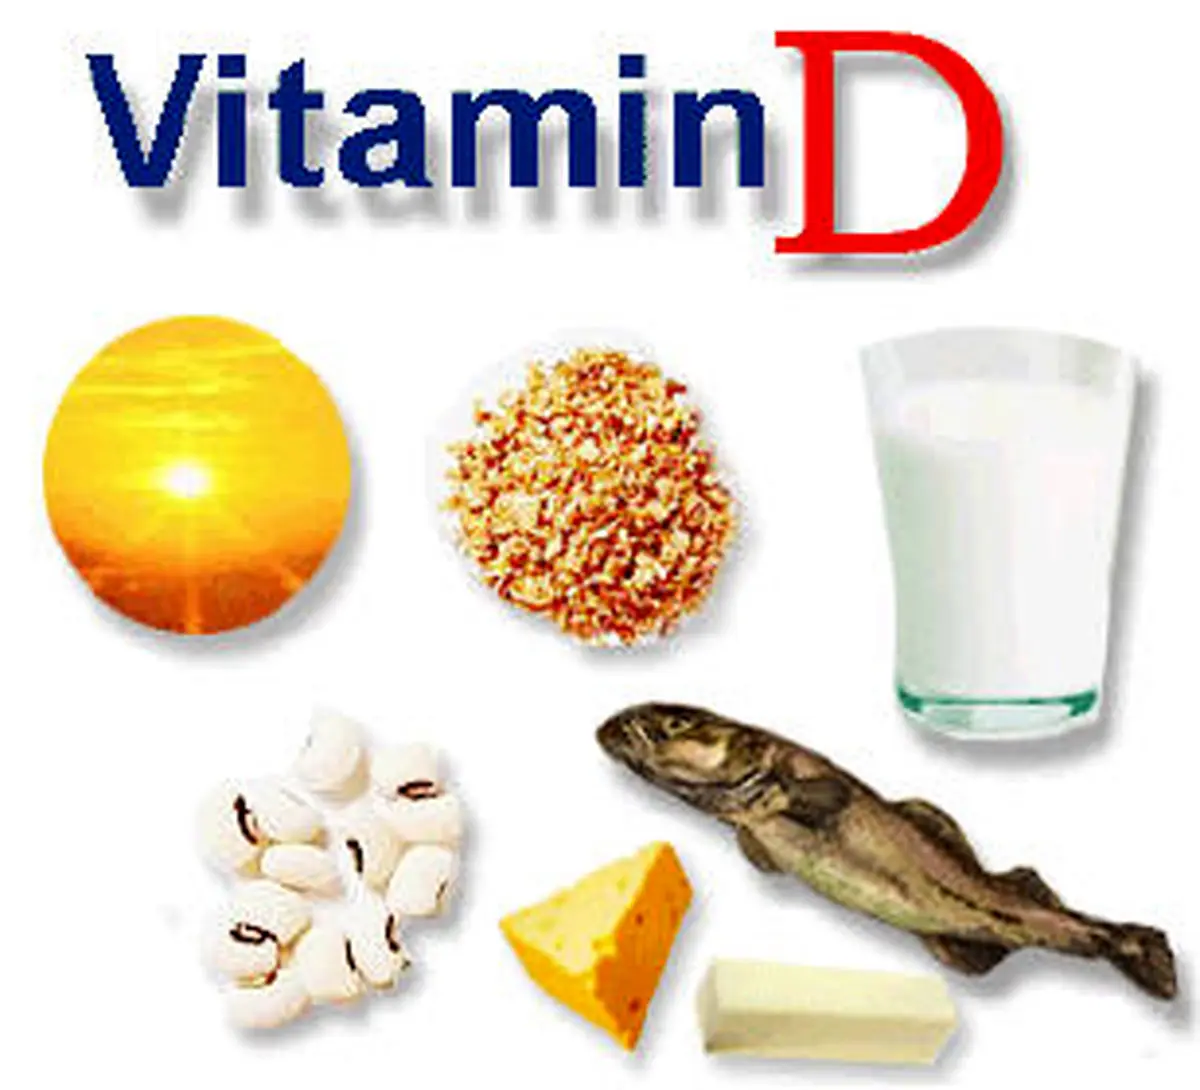 اگر استخوان محکم میخواهید این ویتامین را مصرف کنید | ویتامین D چه خاصیتی دارد؟